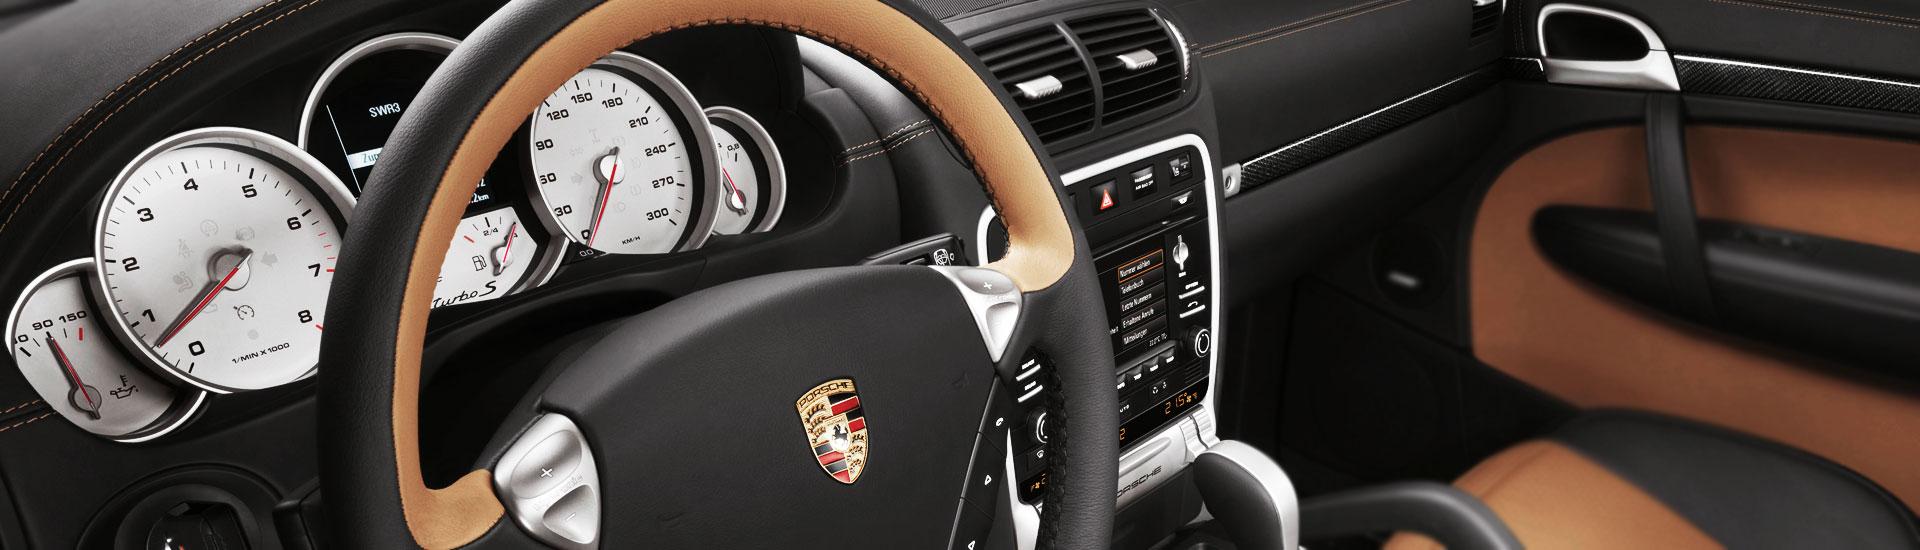 2015 Porsche Cayenne Custom Dash Kits